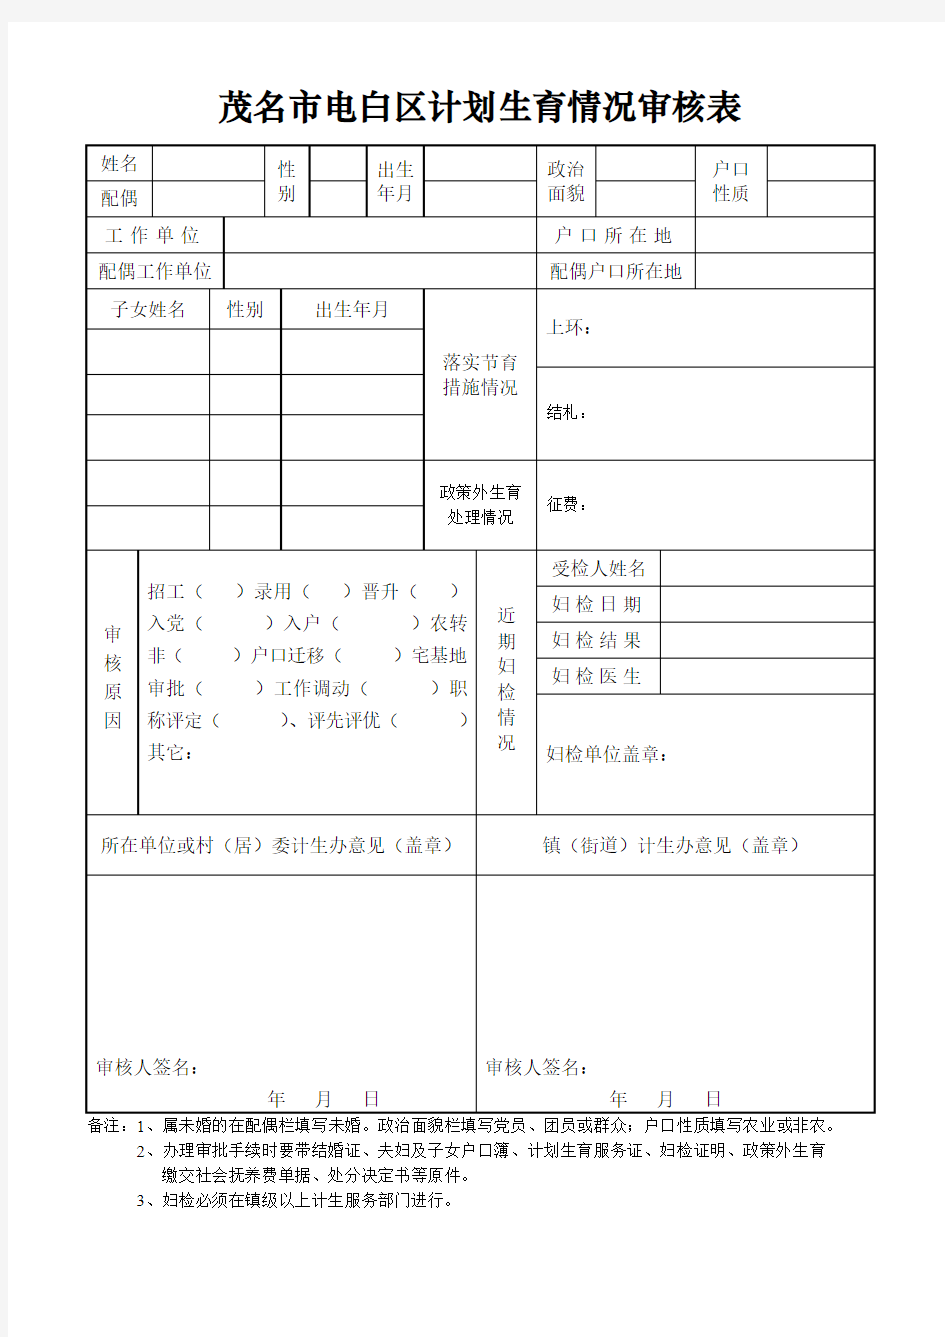 茂名市电白区计划生育情况审核表(2019年适用)